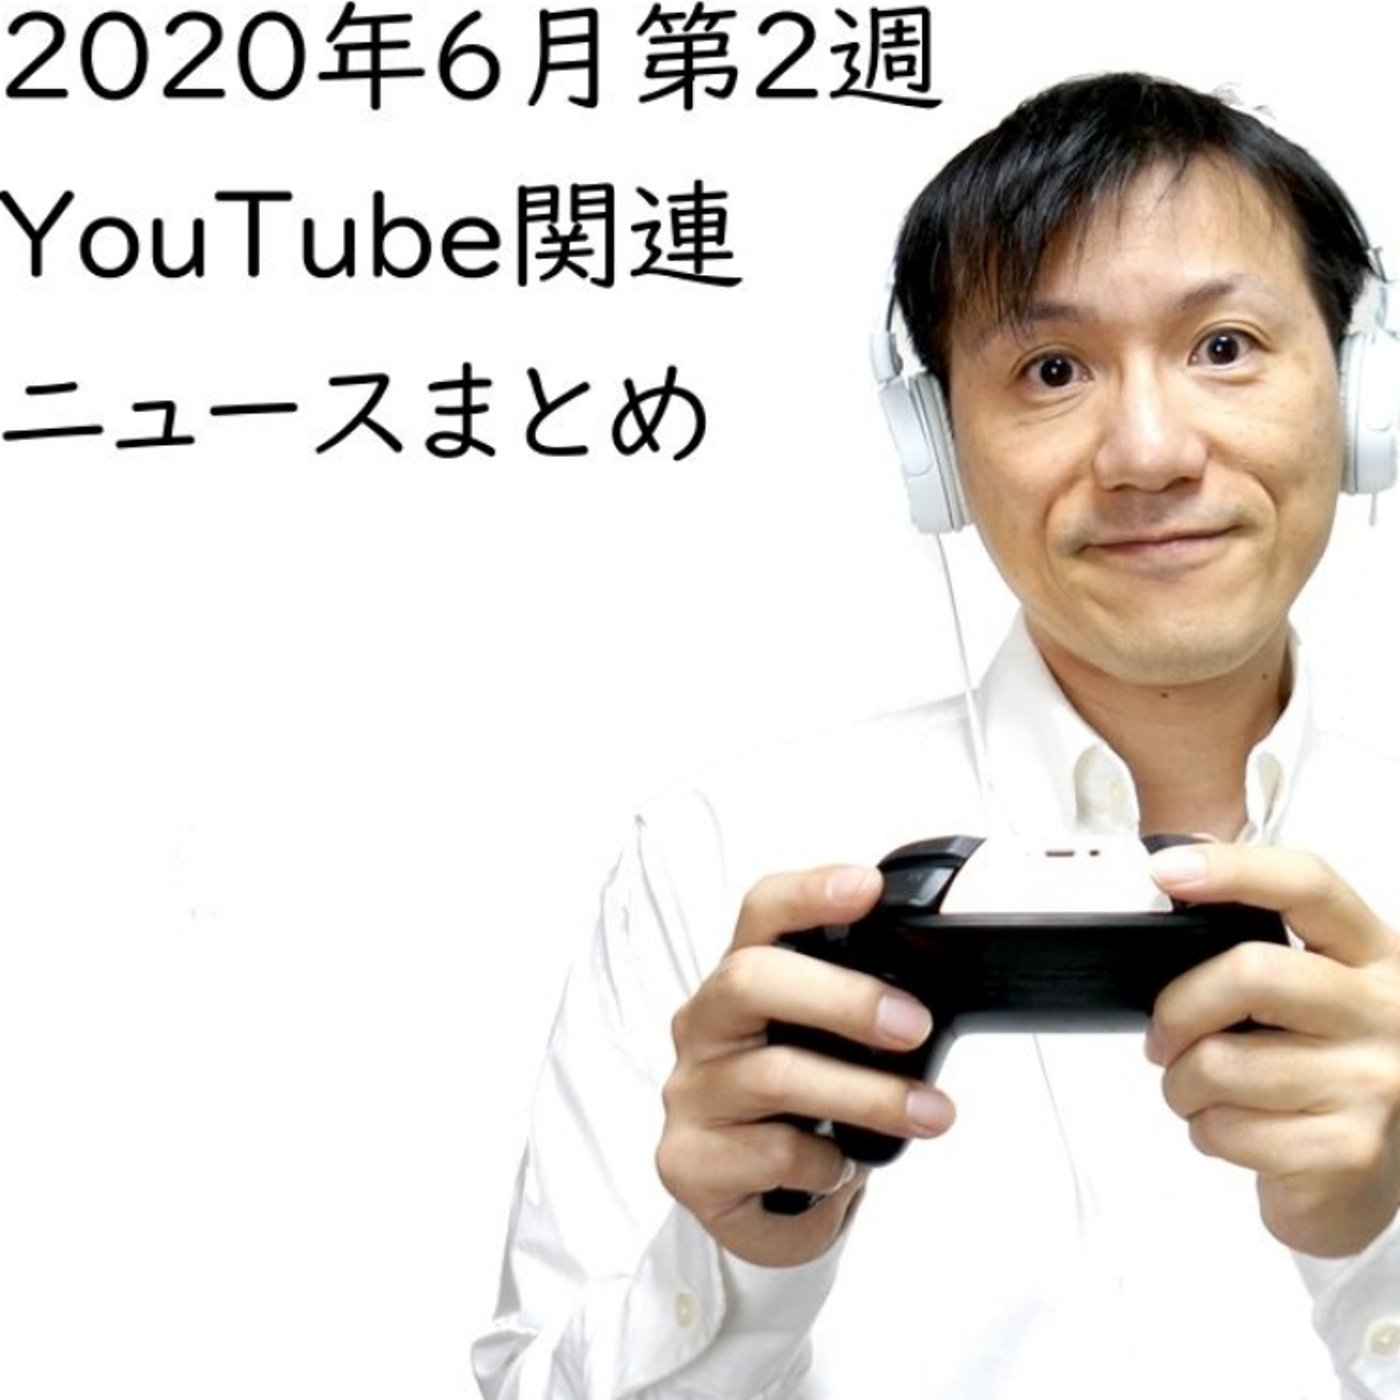 2020年6月第2週 YouTube関連ニュースまとめ【#119】